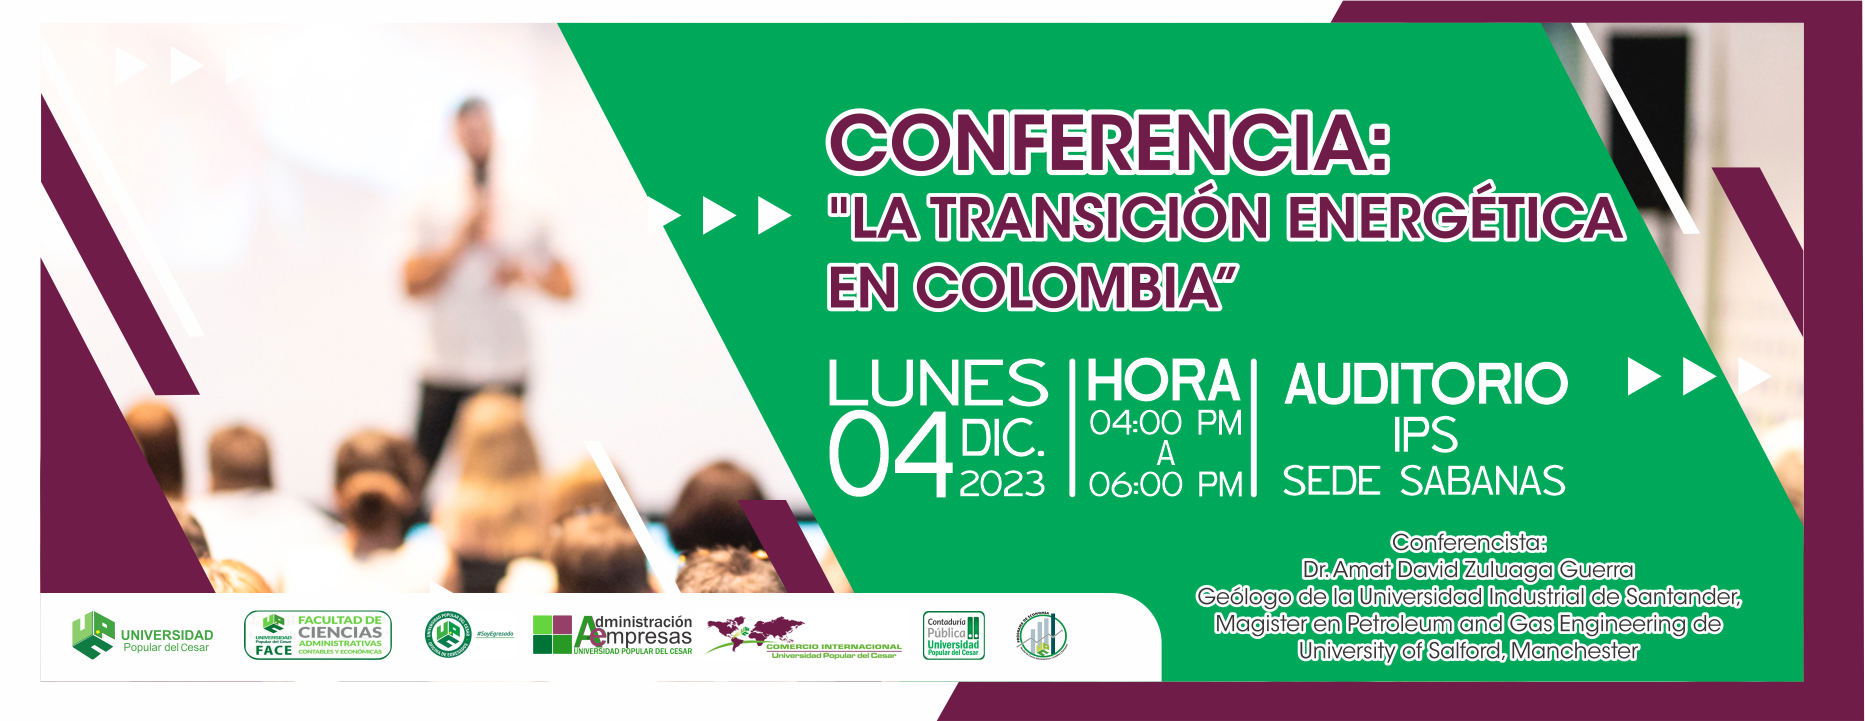 Banner Conferencia: “La Transición Energética en Colombia”